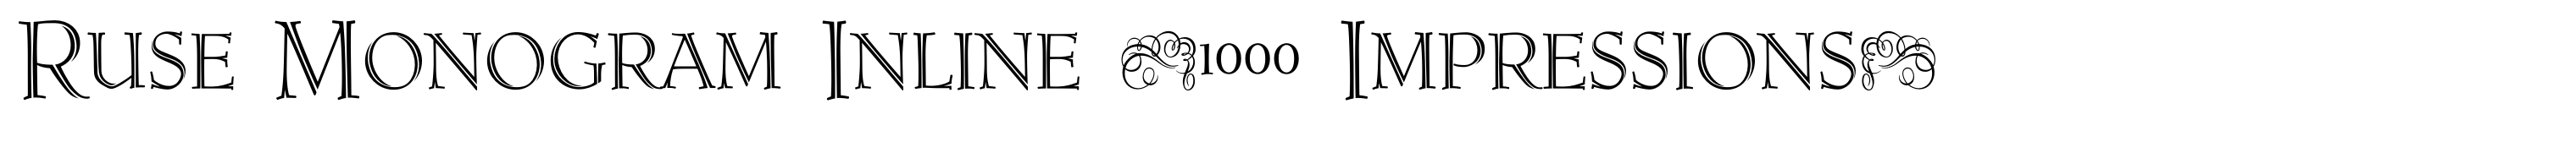 Ruse Monogram Inline (1000 Impressions)